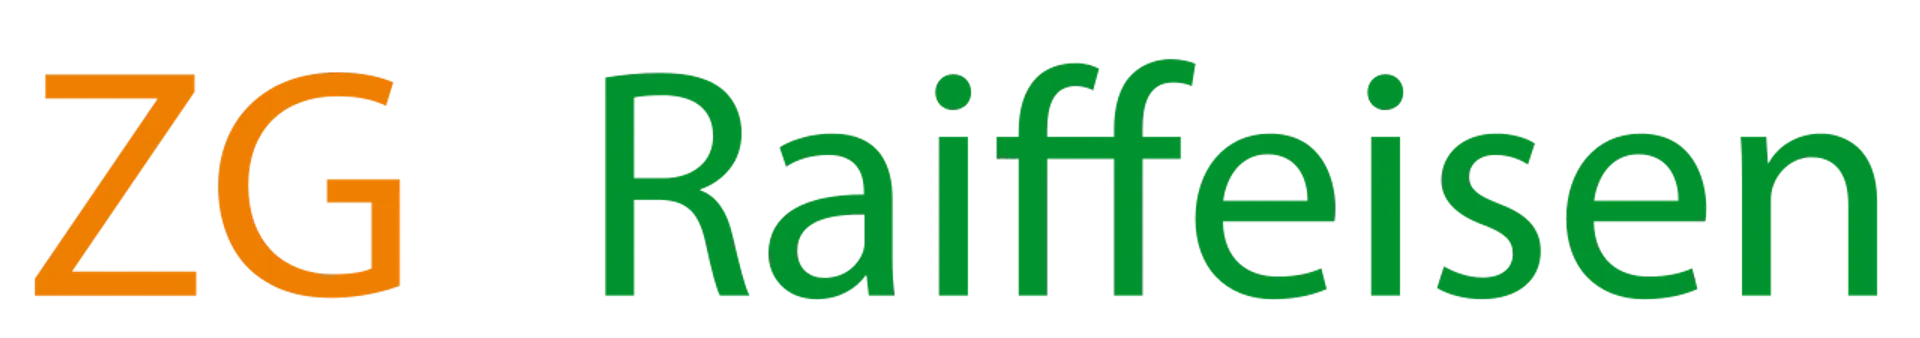 ZG RAIFFEISEN logo die aktuell Flugblatt